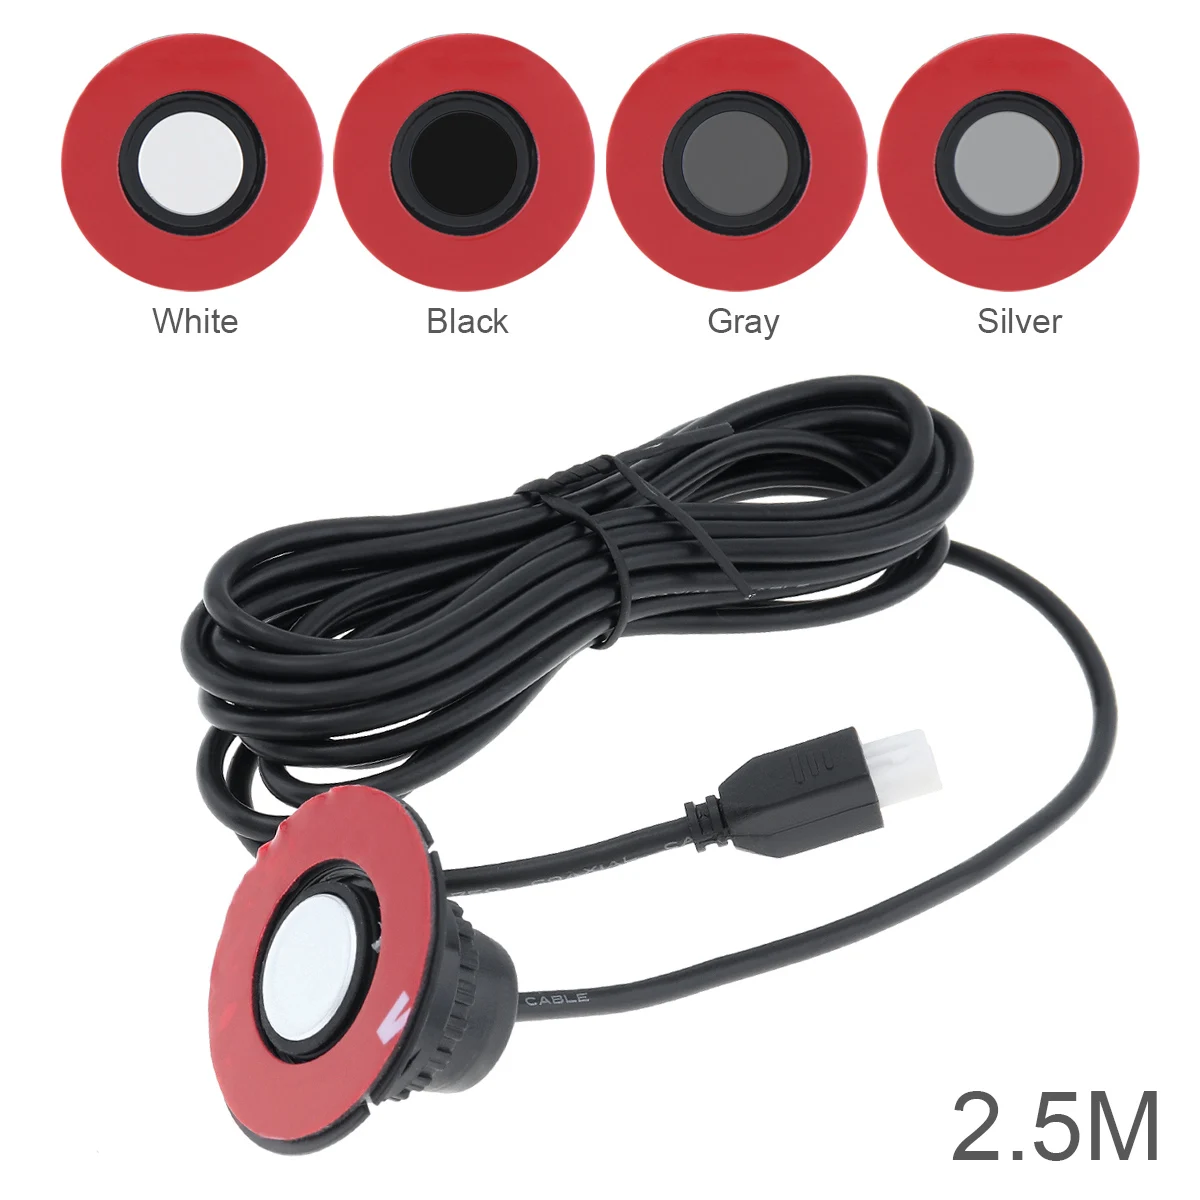 

2.5 M Original 13mm Flat Sensors Adjustable Depth 16mm Car Parking Sensor for Monitor Reverse System